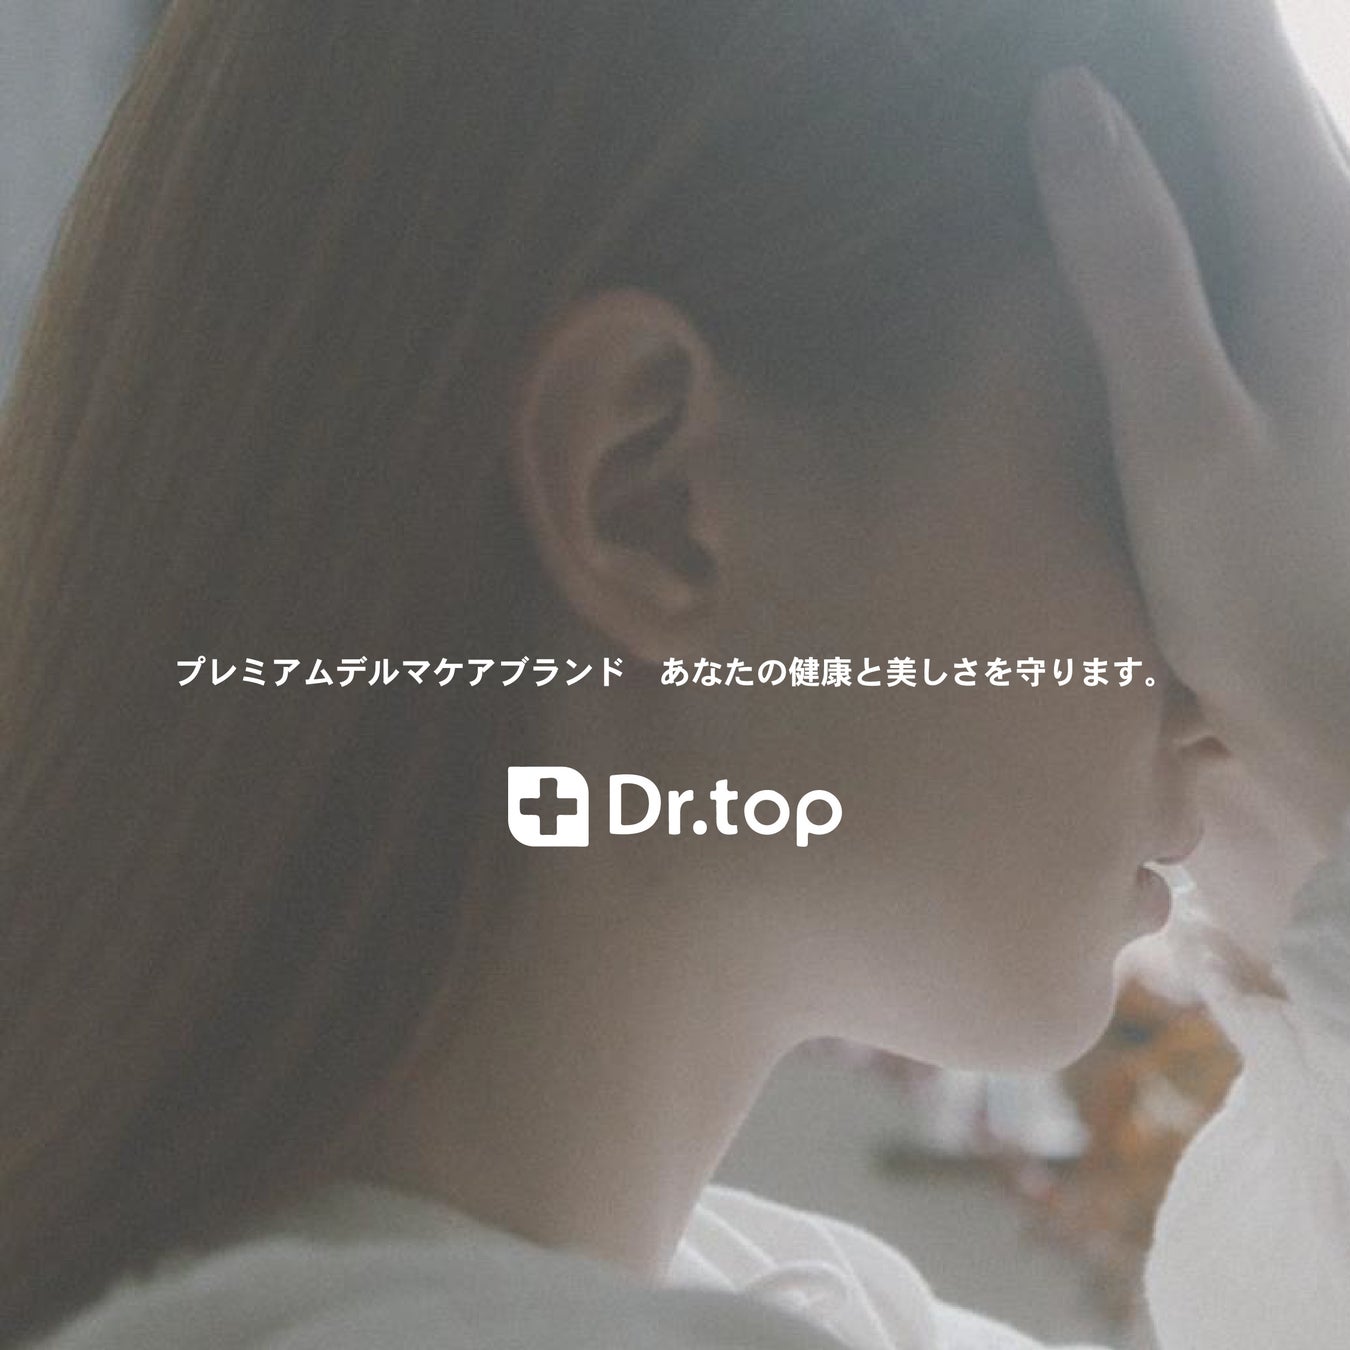 【フィルダクト】Mistletoe Japanをリード投資家として約1.5億円を資金調達